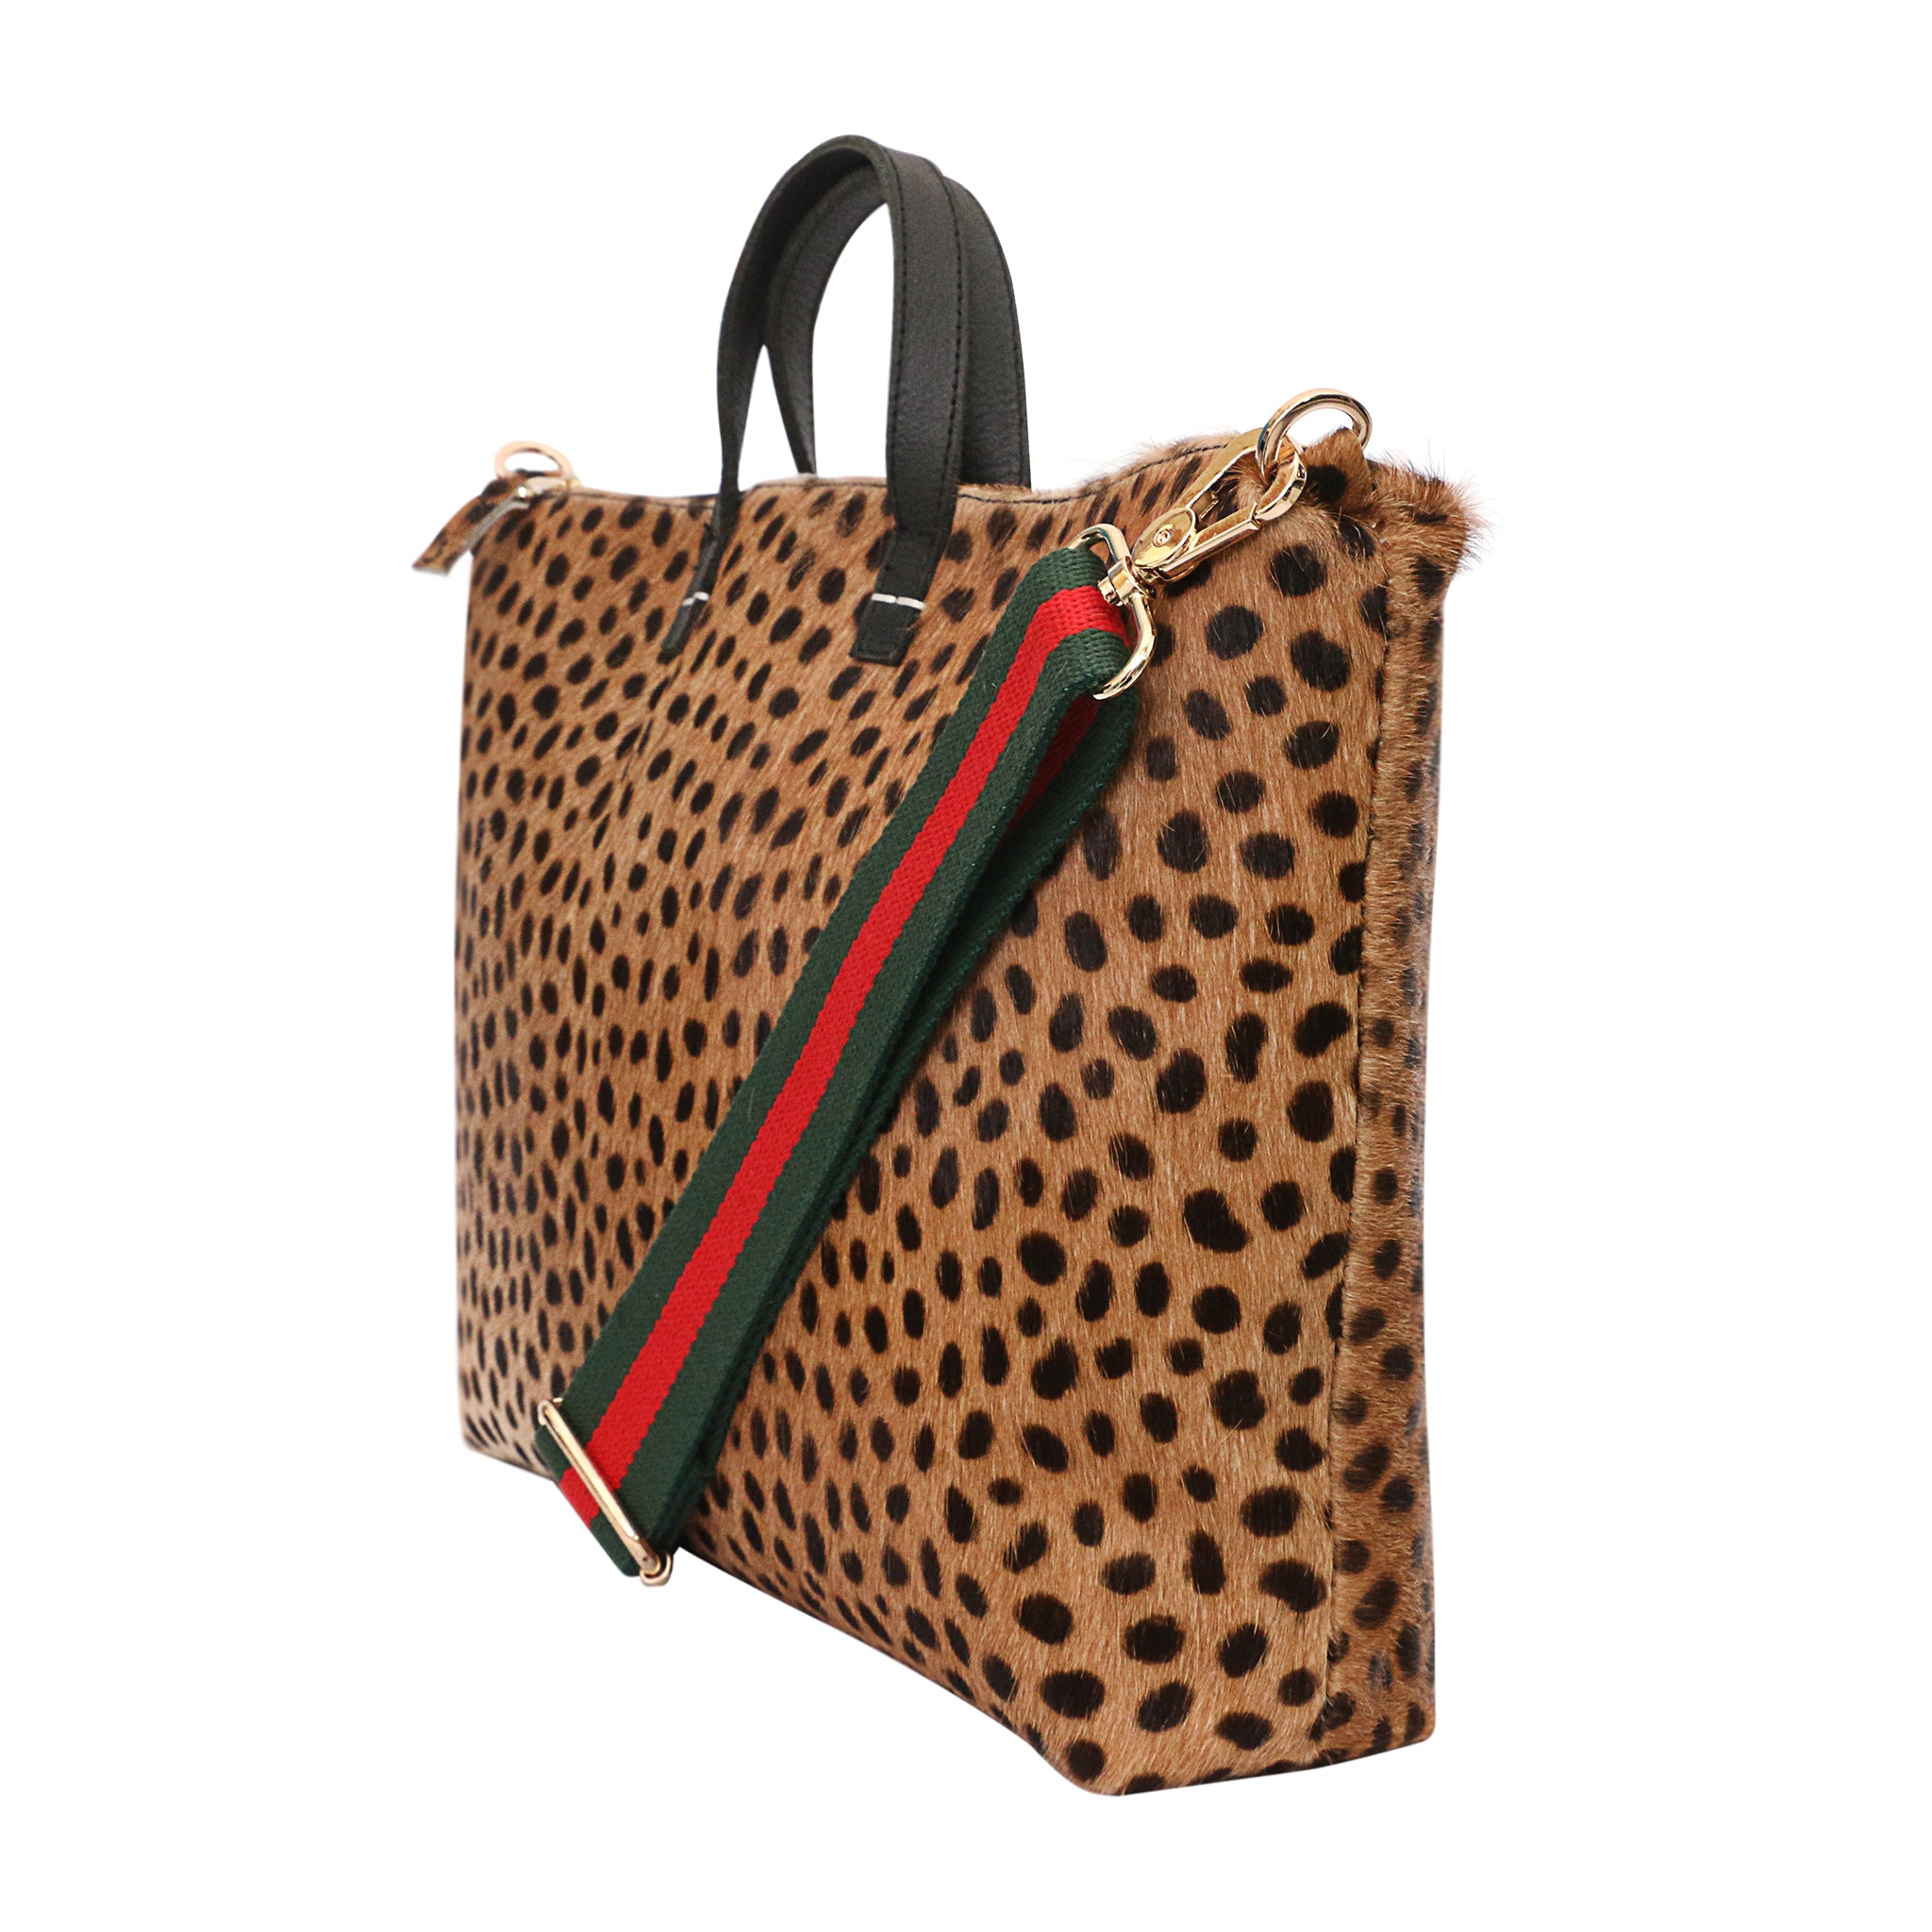 Leopard Print Weekend Travel Bag